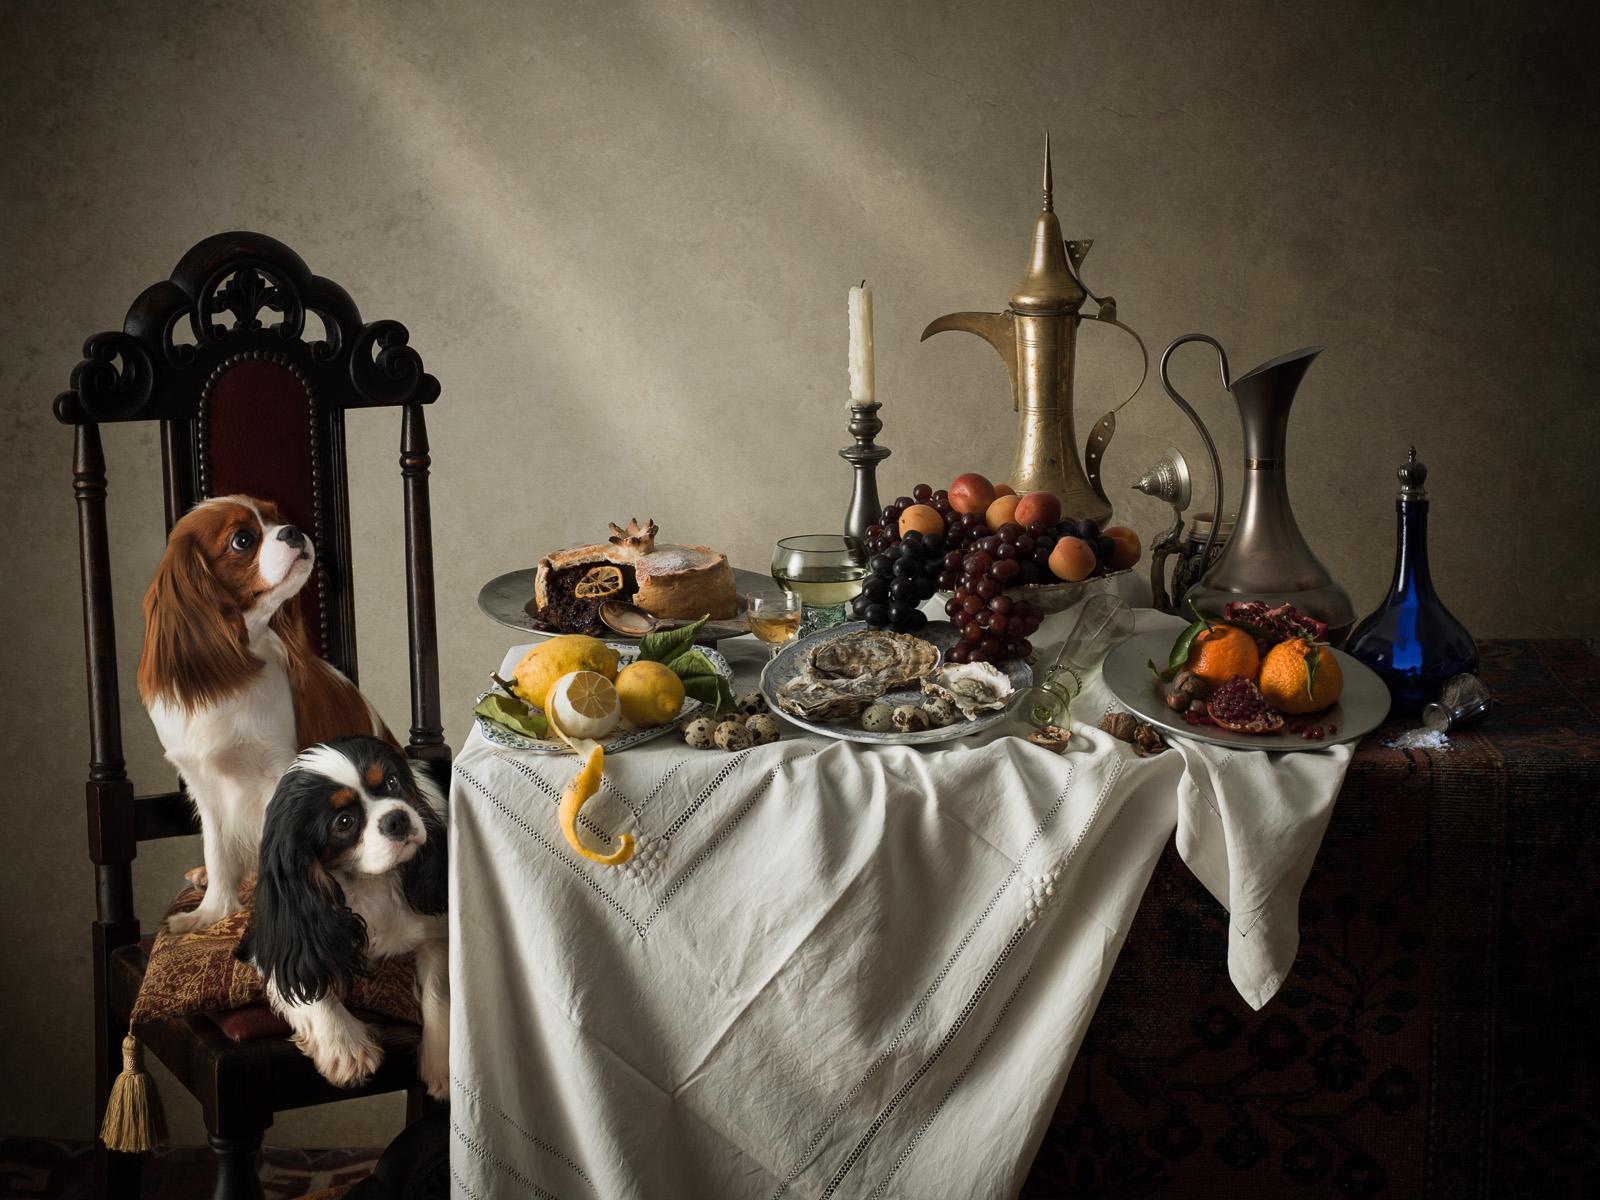 Niederländischer Hund #3 König Charles Spaniels – Tier, signiert, zeitgenössisch, limitierte Auflage